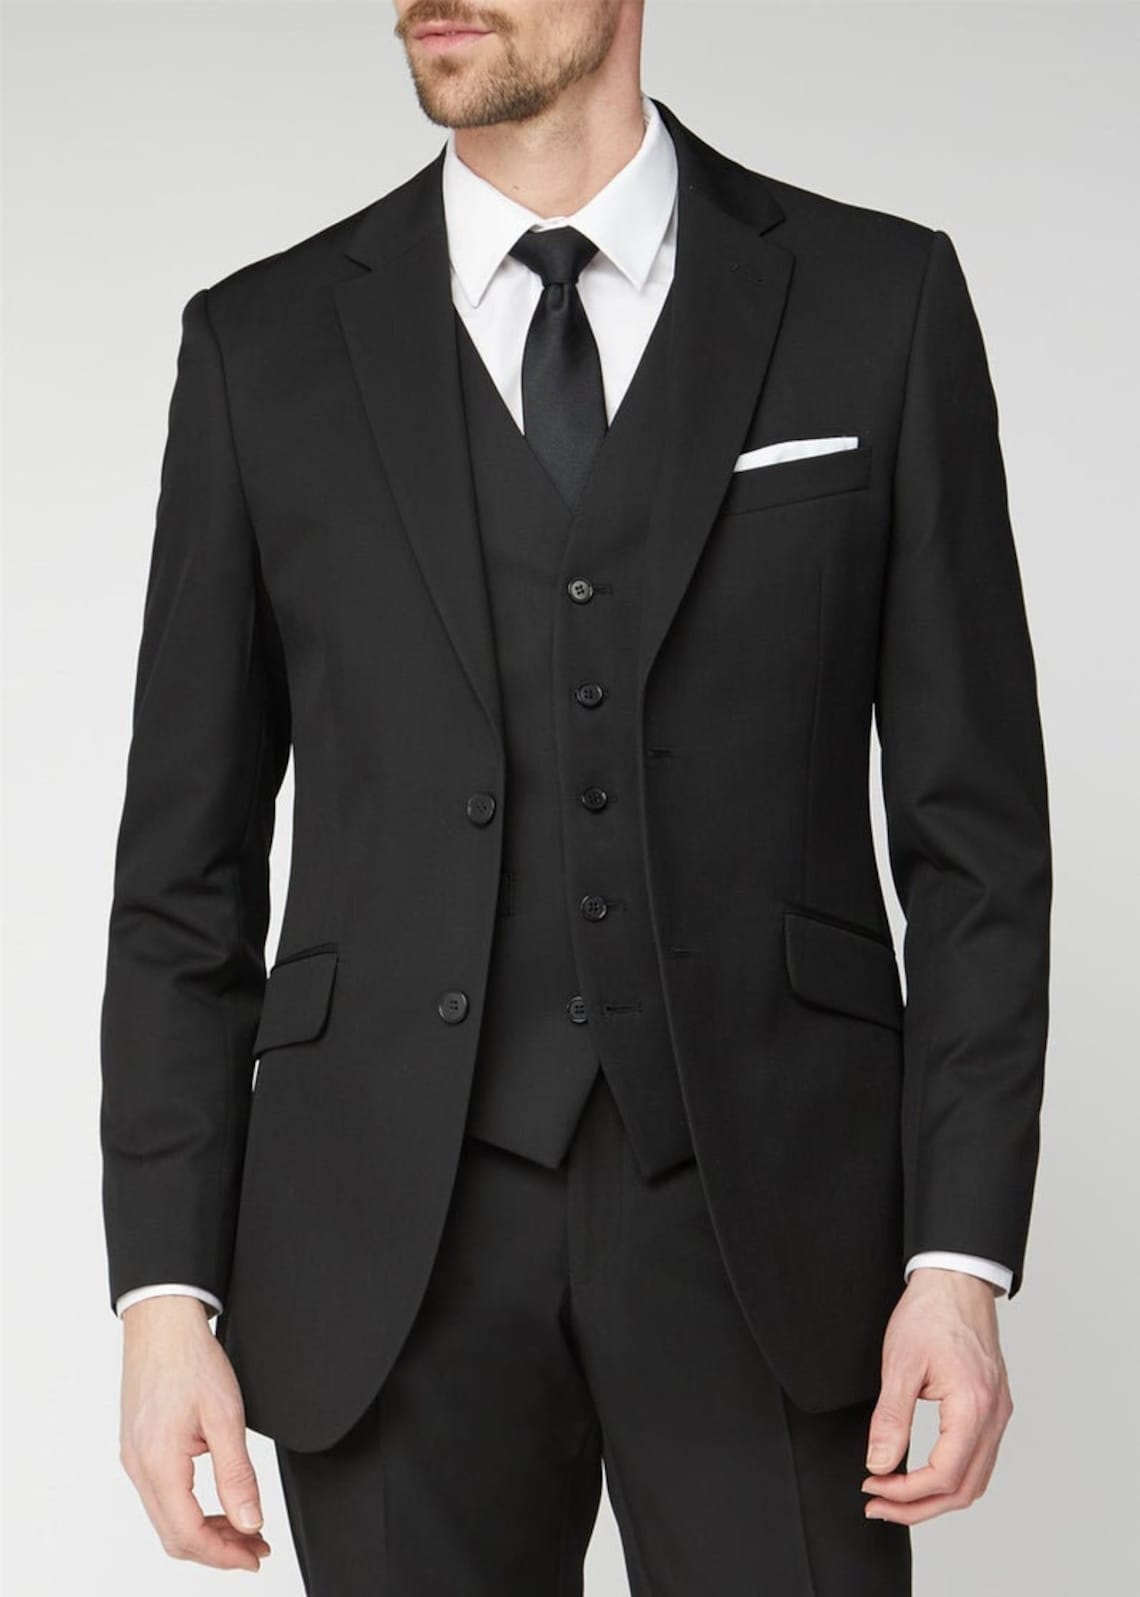 Men Suits Black 3 Piece Slim Fit Formal Fashion Wedding Suit | Etsy